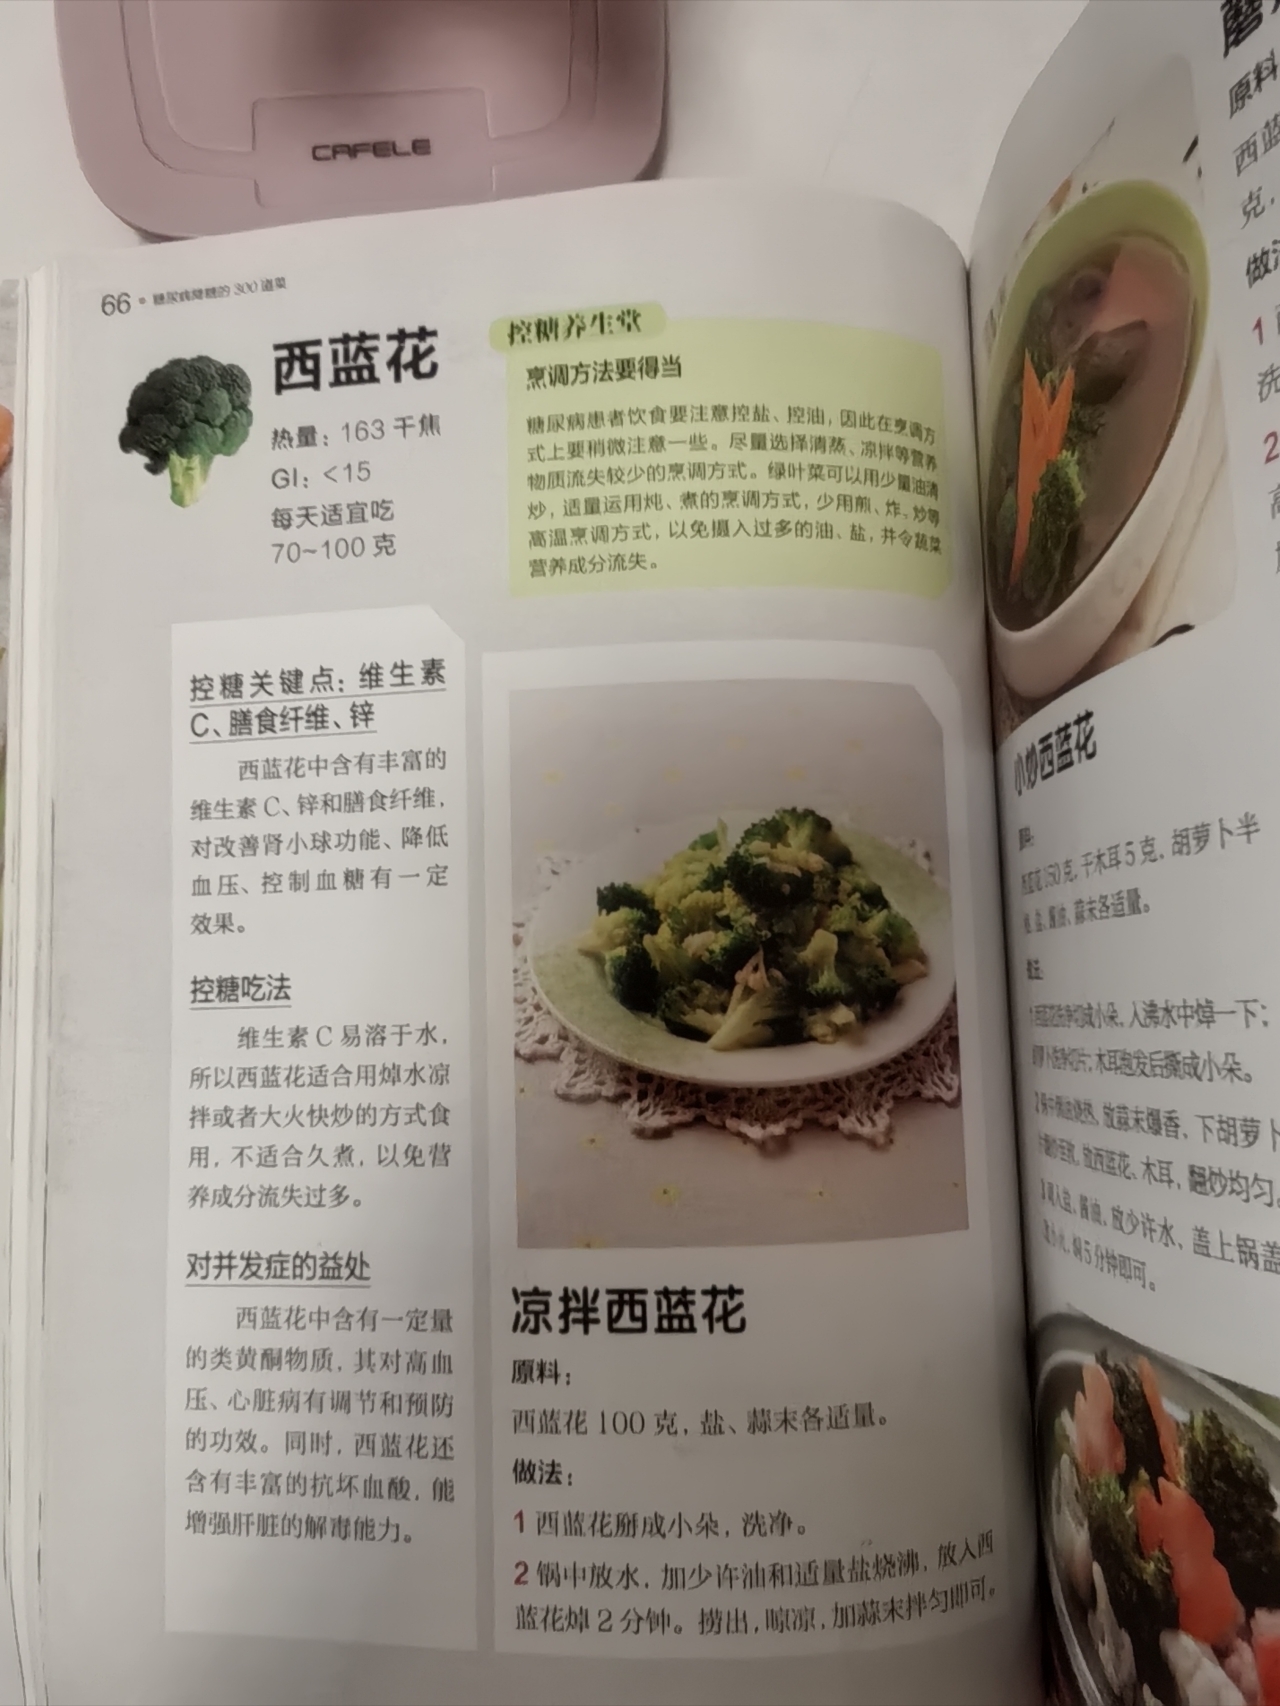 蔬菜及菌菇类: 西蓝花